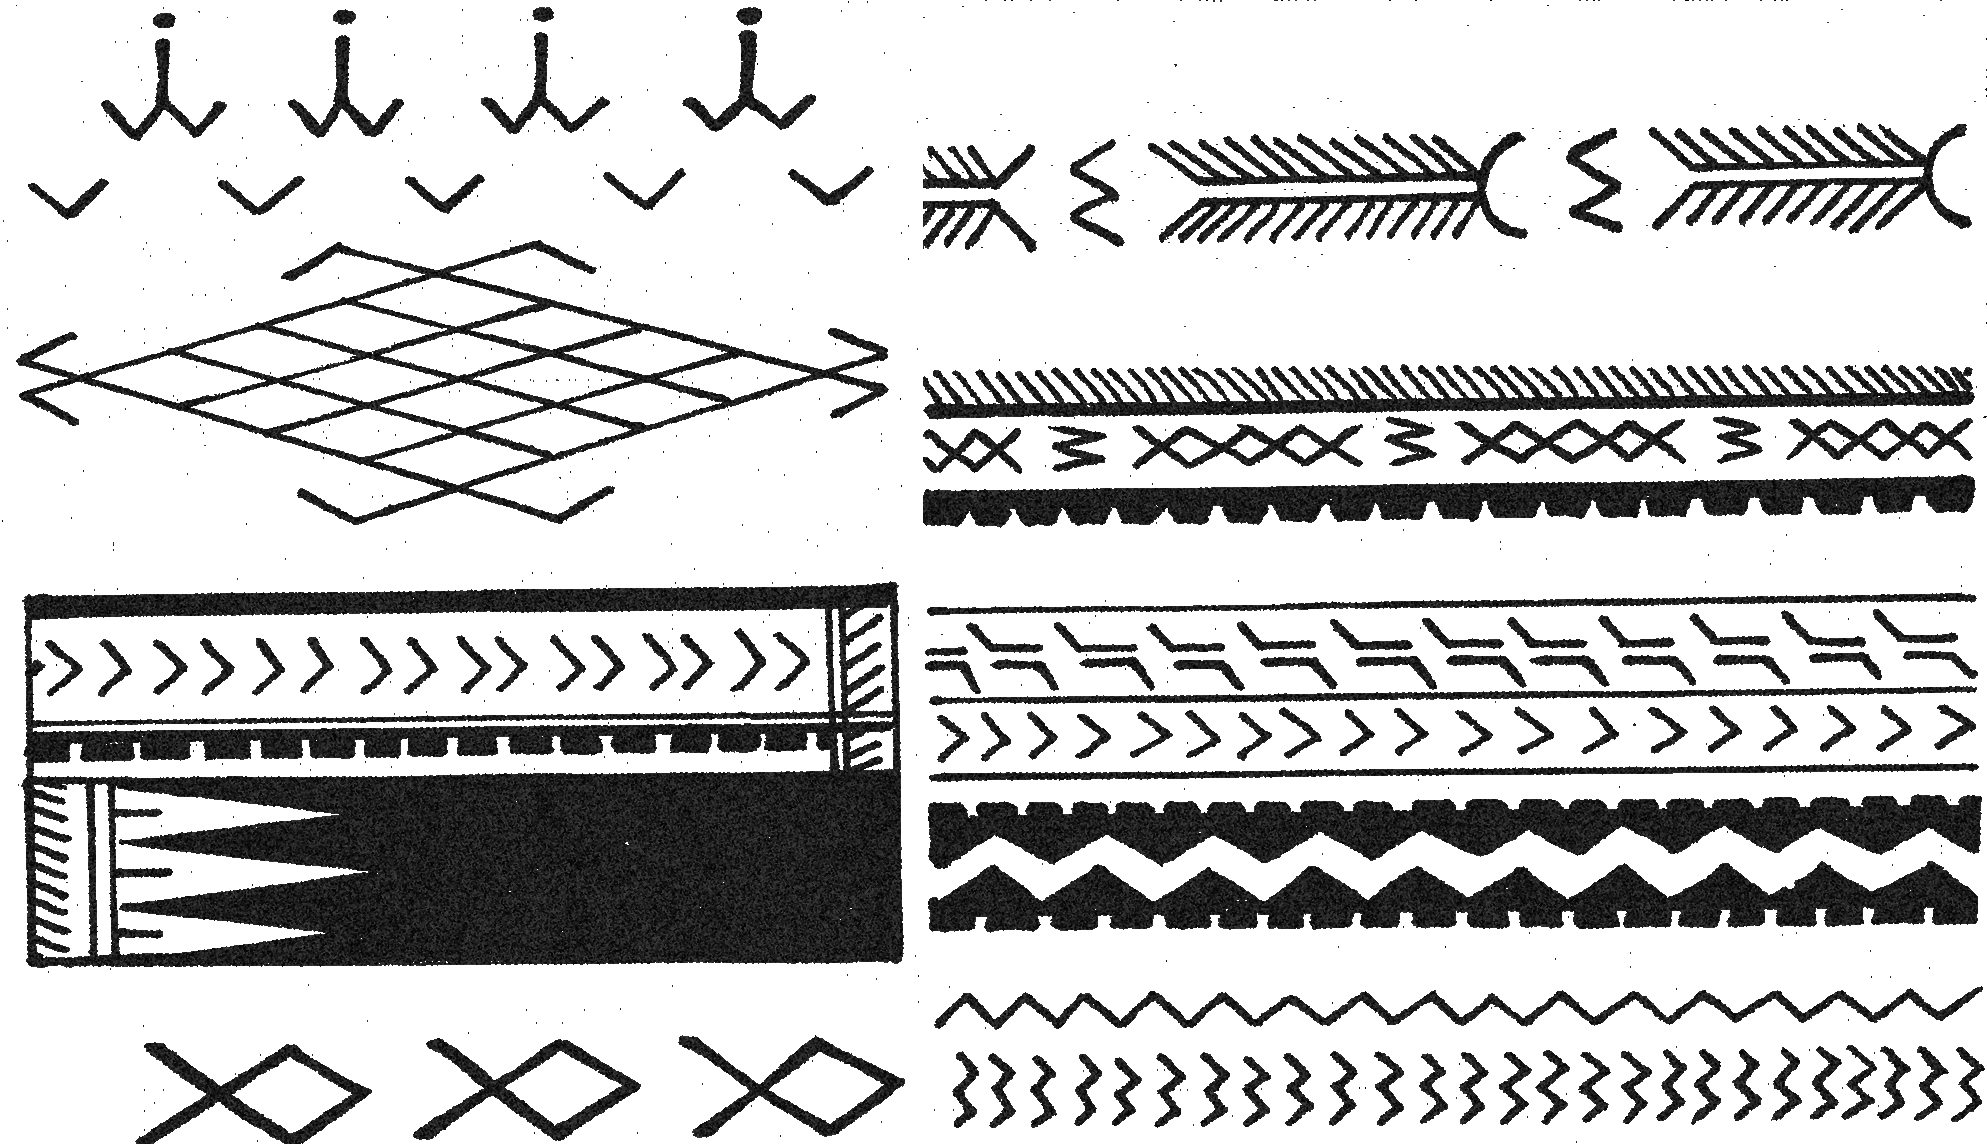 des symbols du tatouage samoan